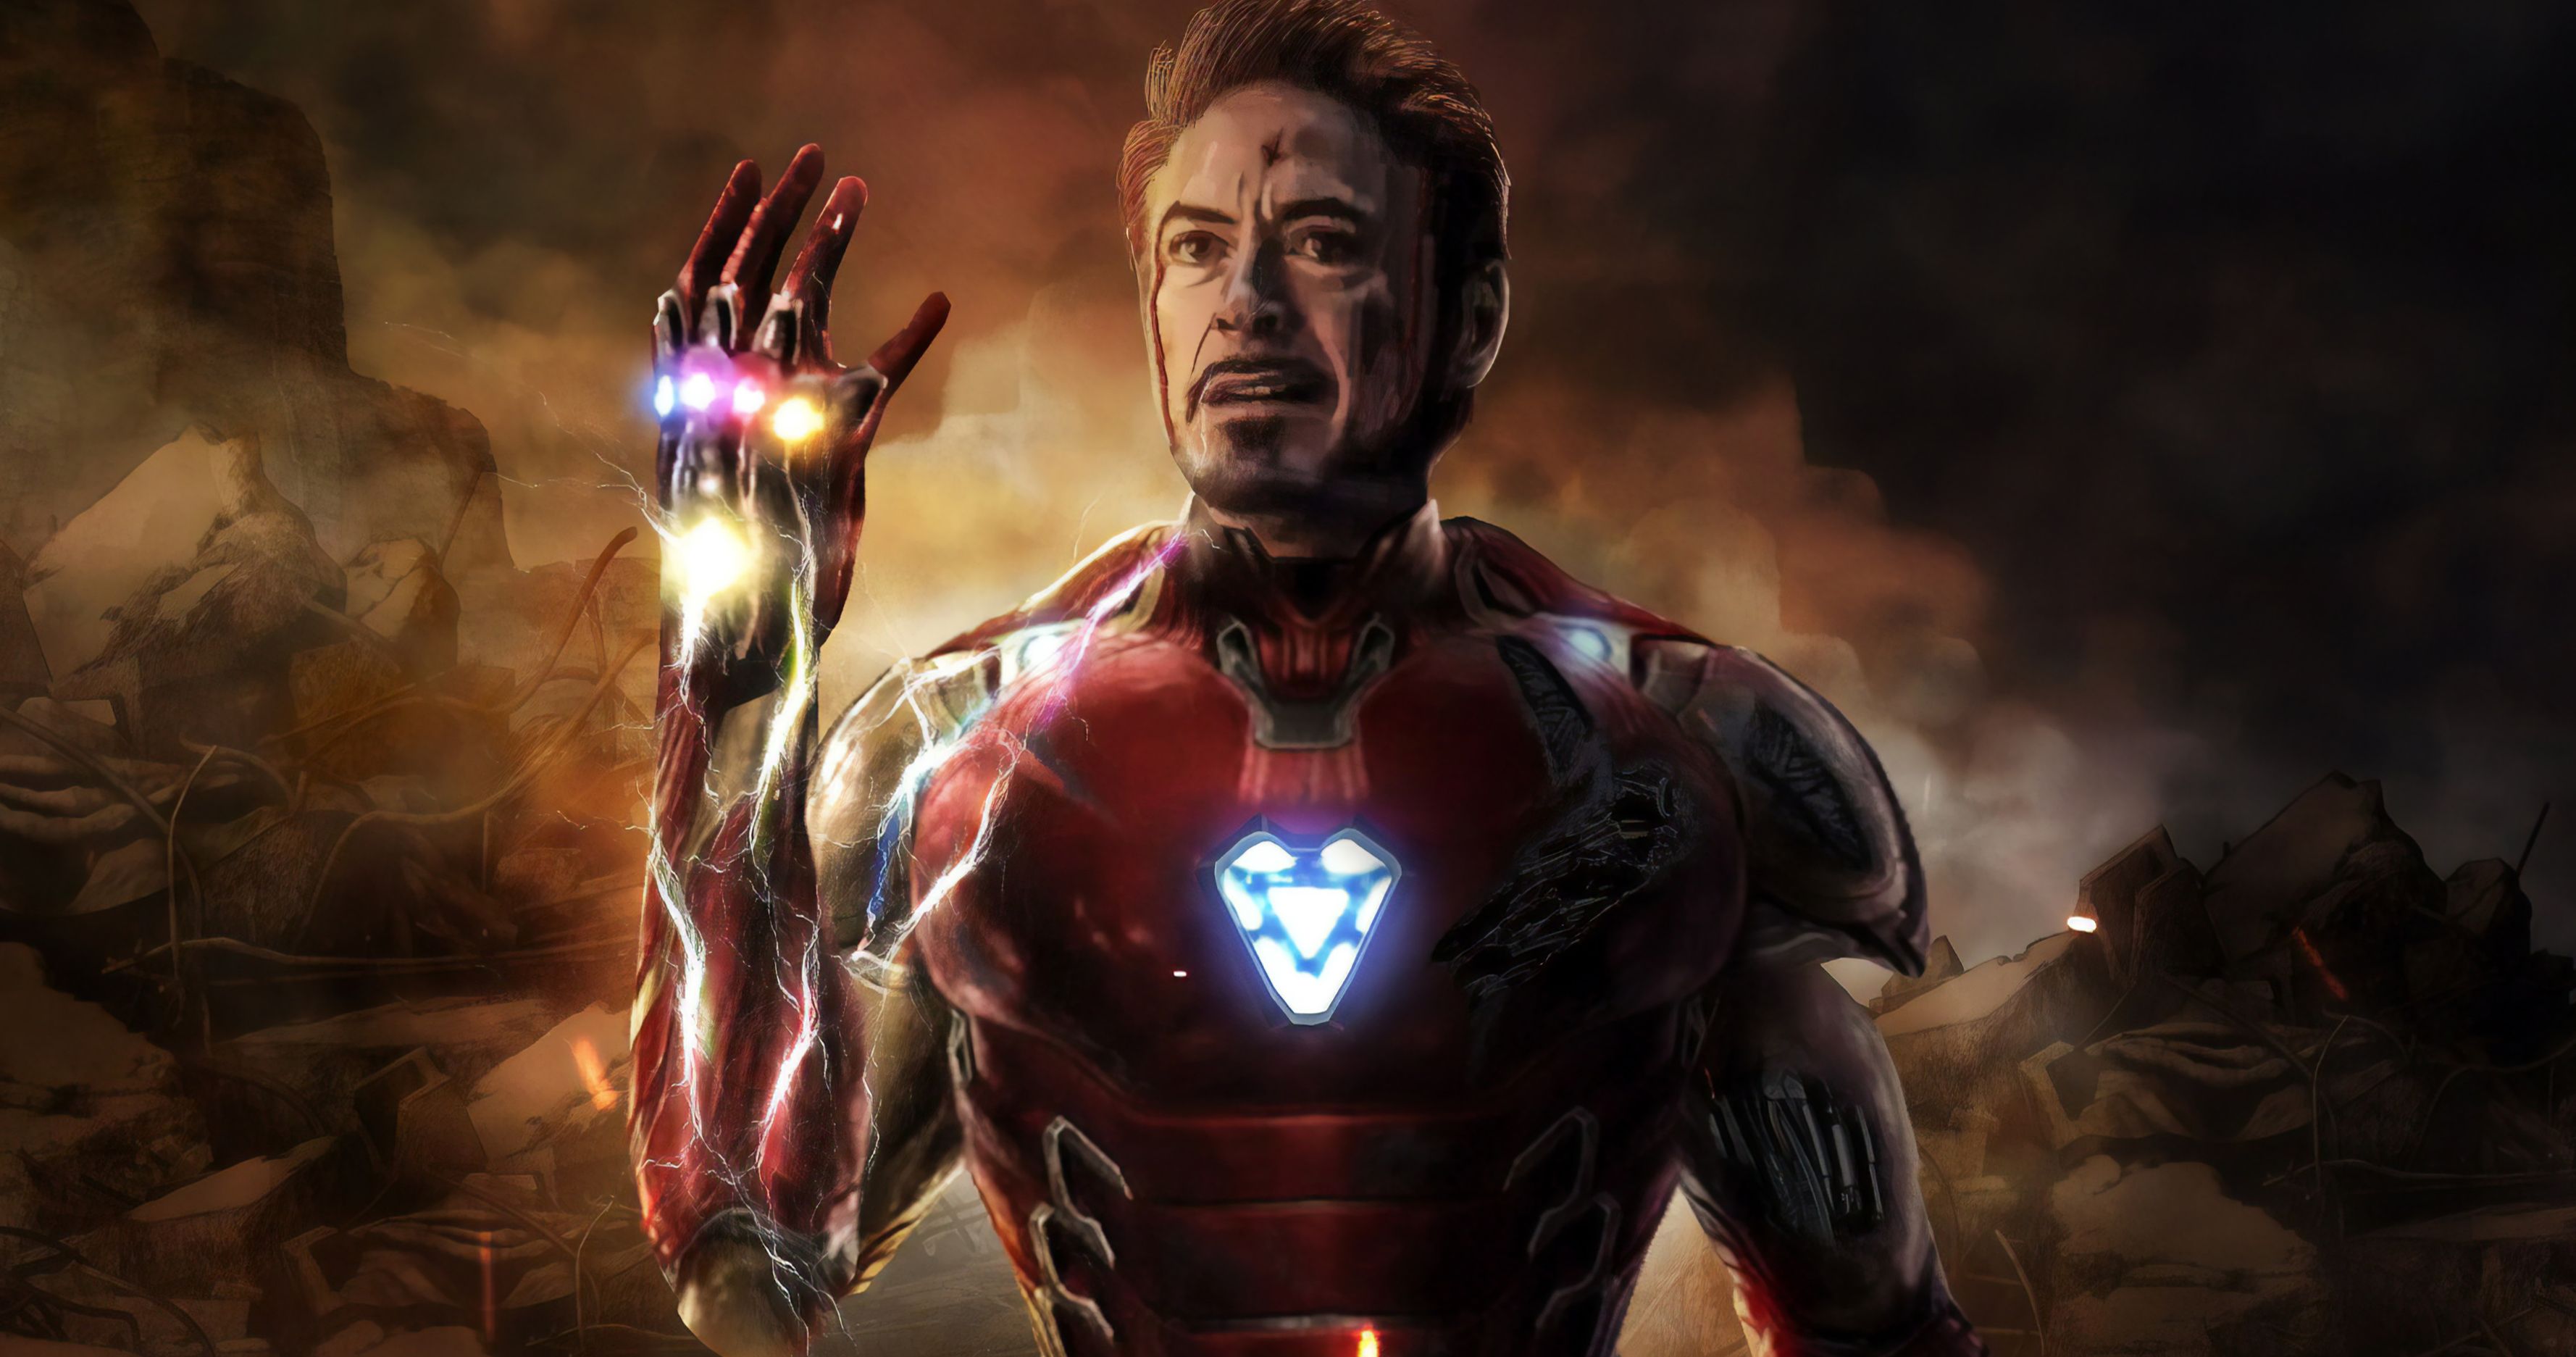 2. Blonde Hair Tony Stark in Avengers: Endgame - wide 4